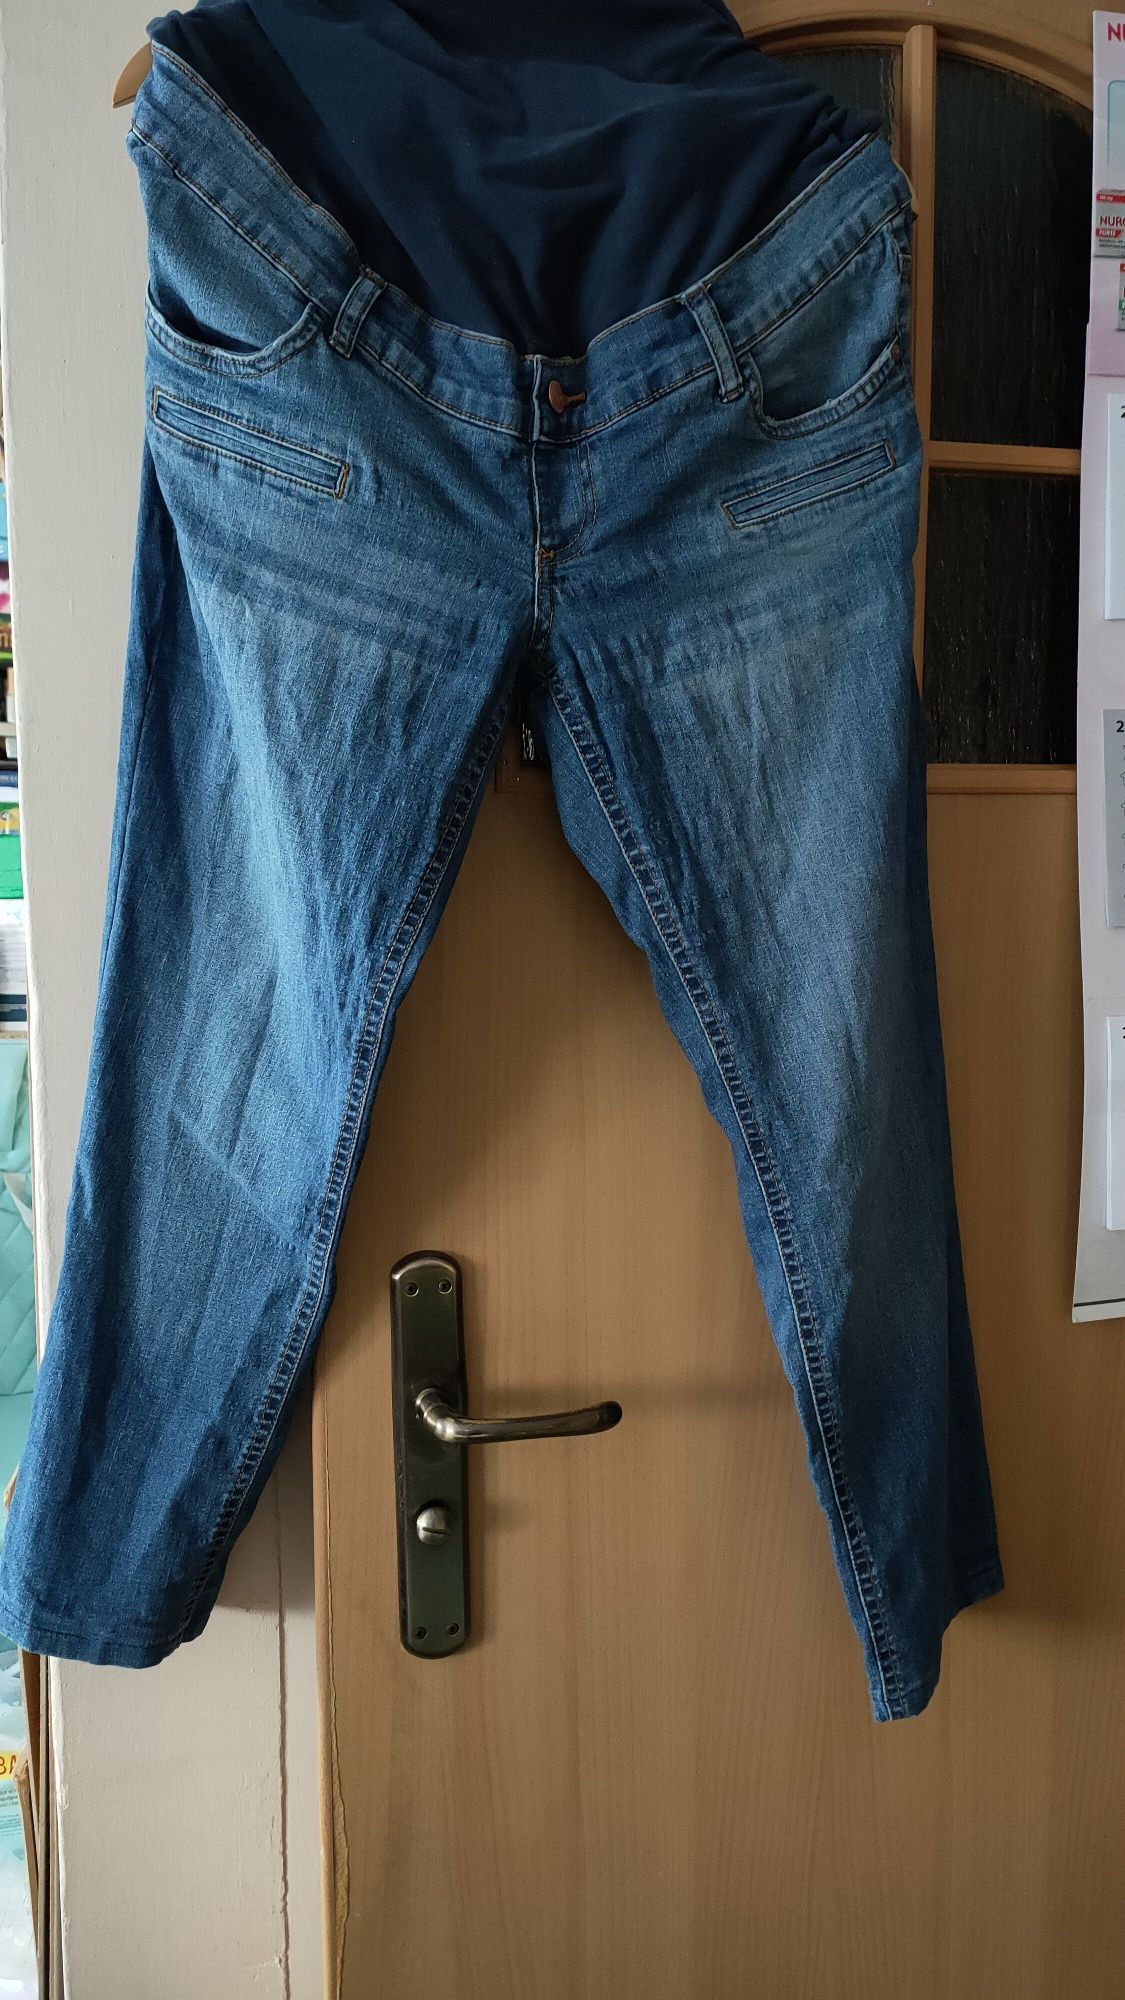 Spodnie ciążowe jeansowe, r. 42.